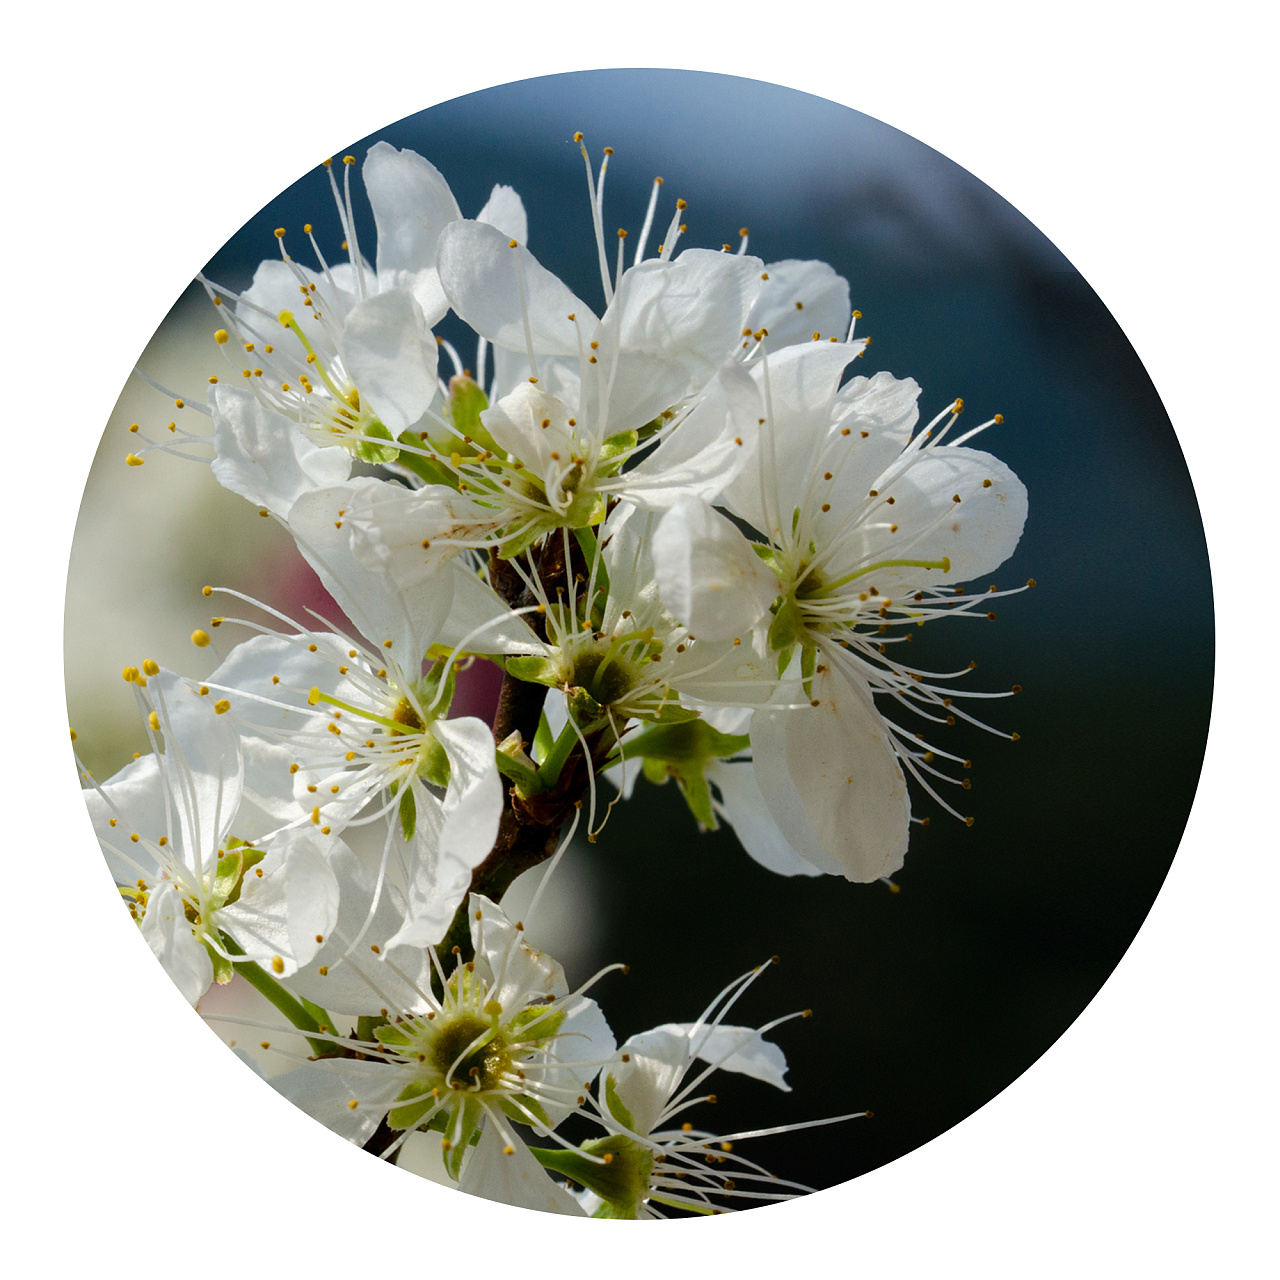 白色青梅花的花语图片